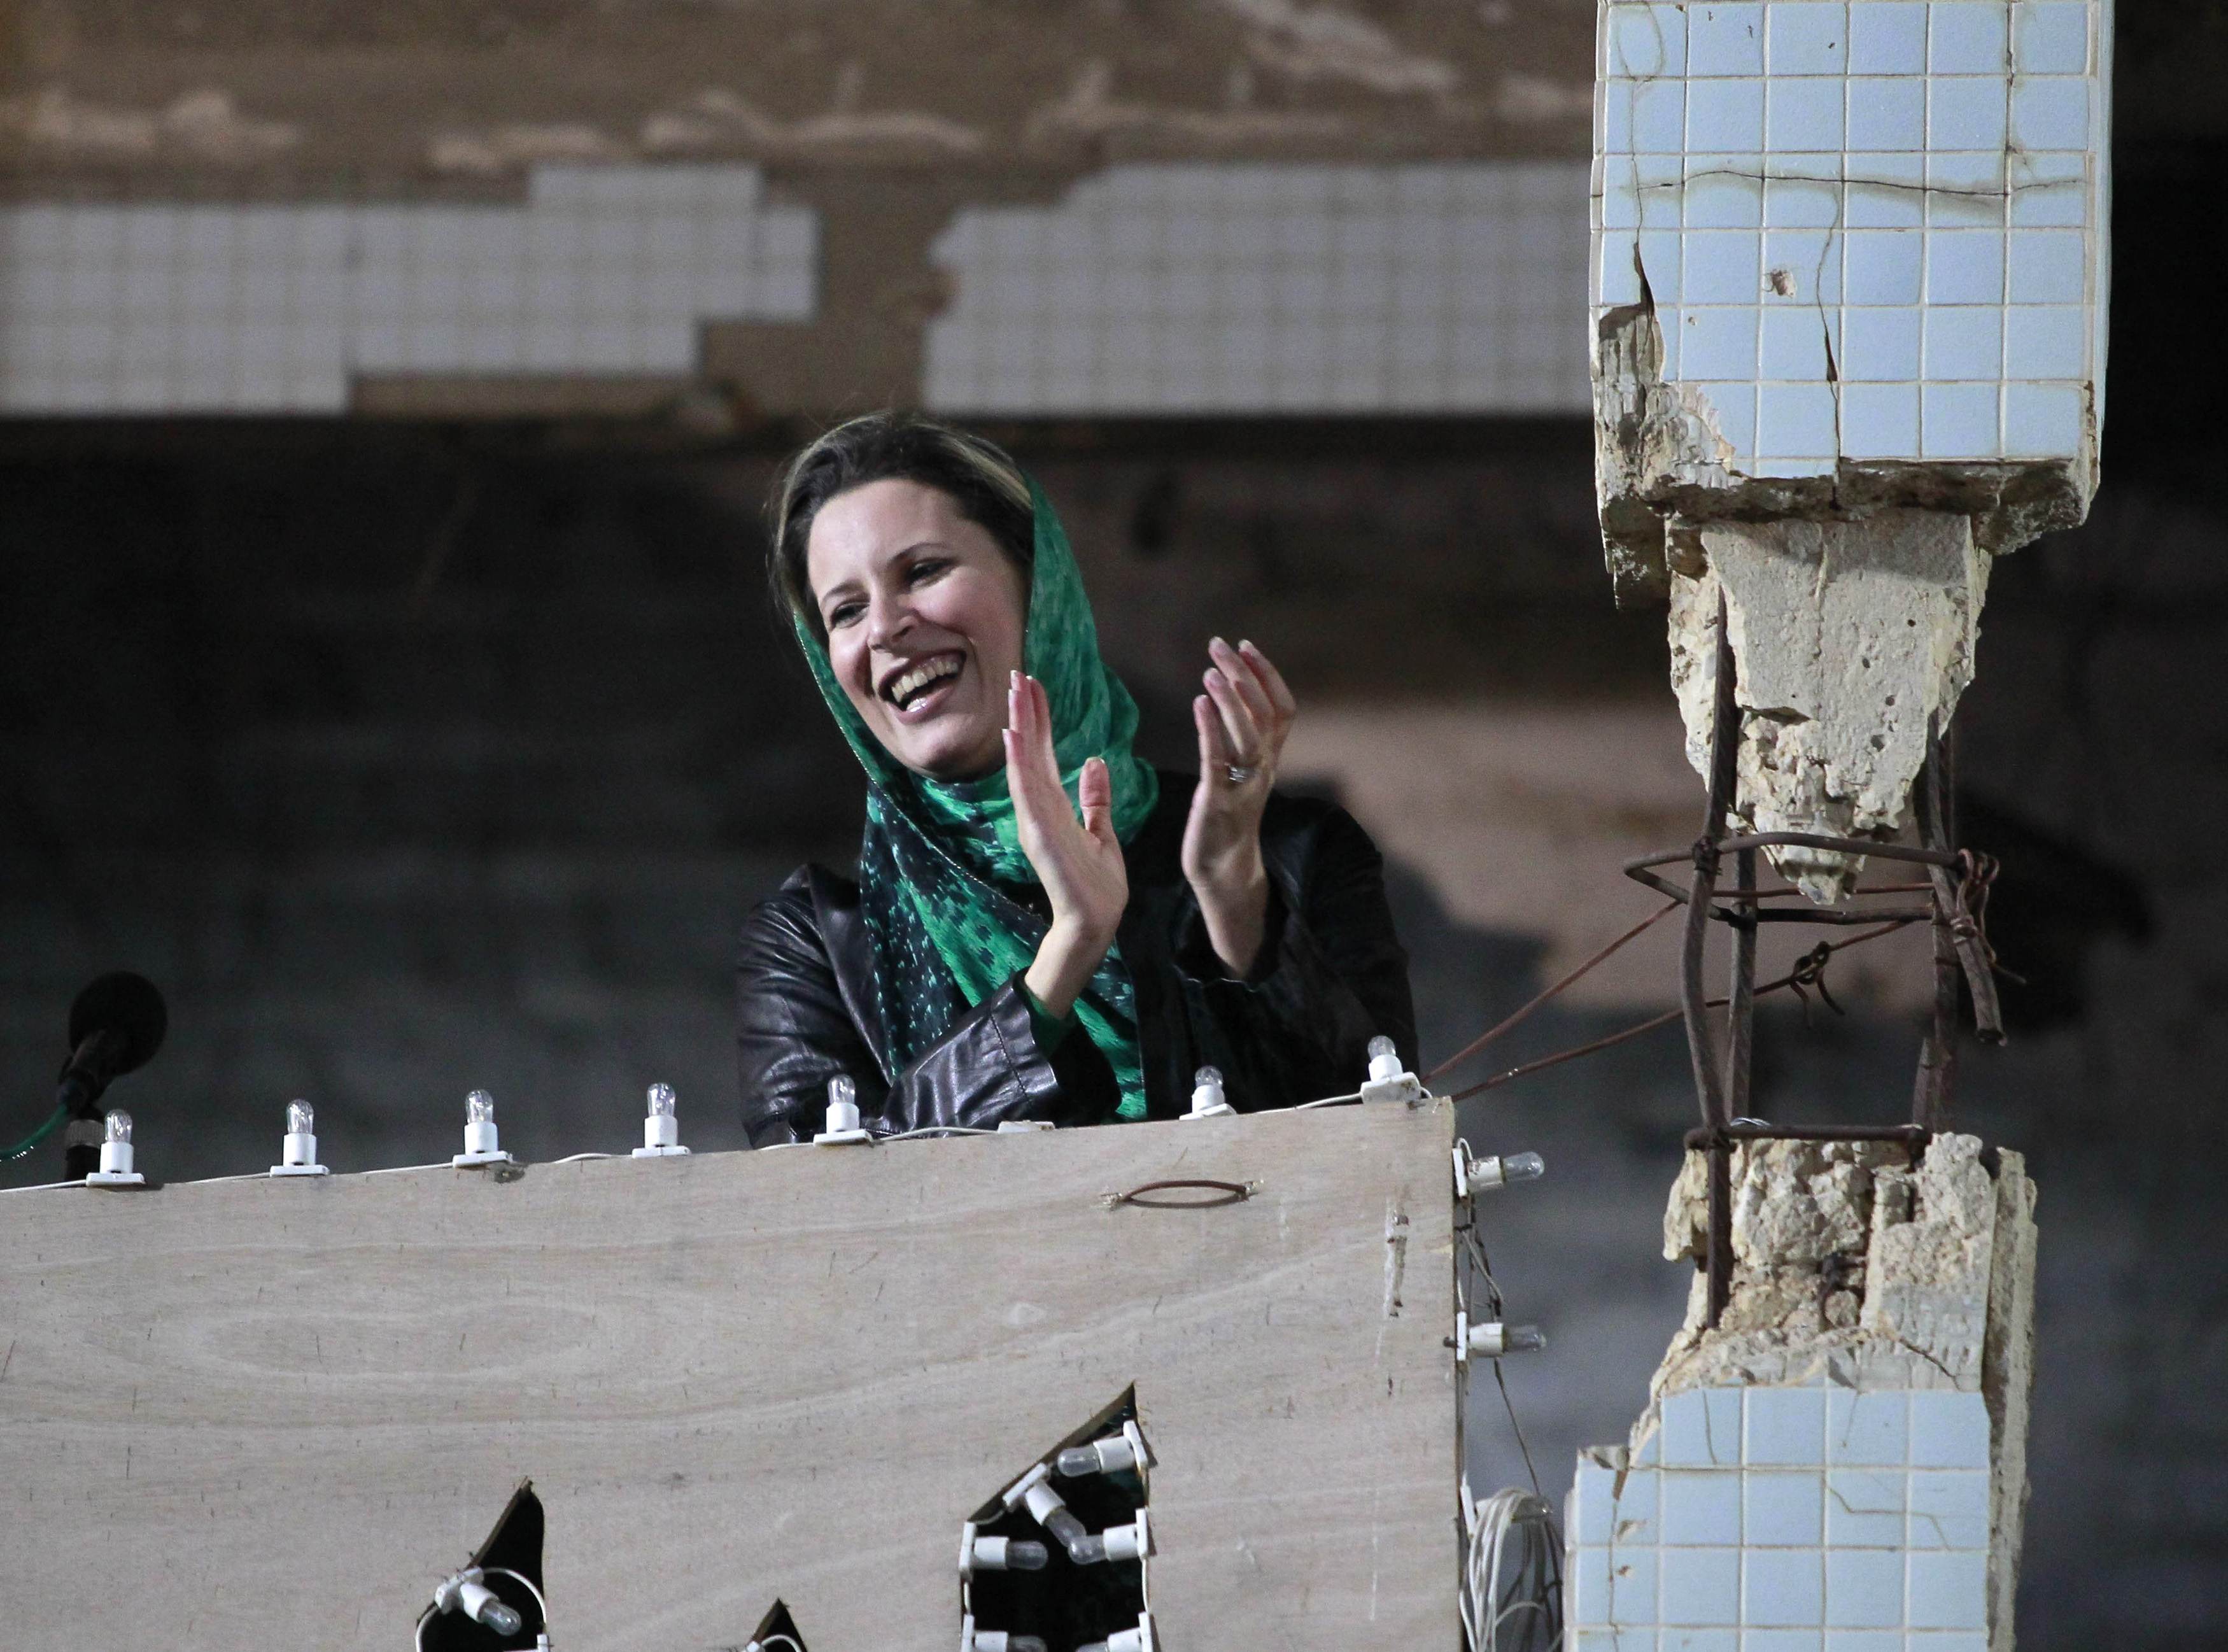 Το πλήθος φωνάζει συνθήματα υπέρ του Καντάφι και εκείνη χειροκροτά - ΦΩΤΟ  REUTERS